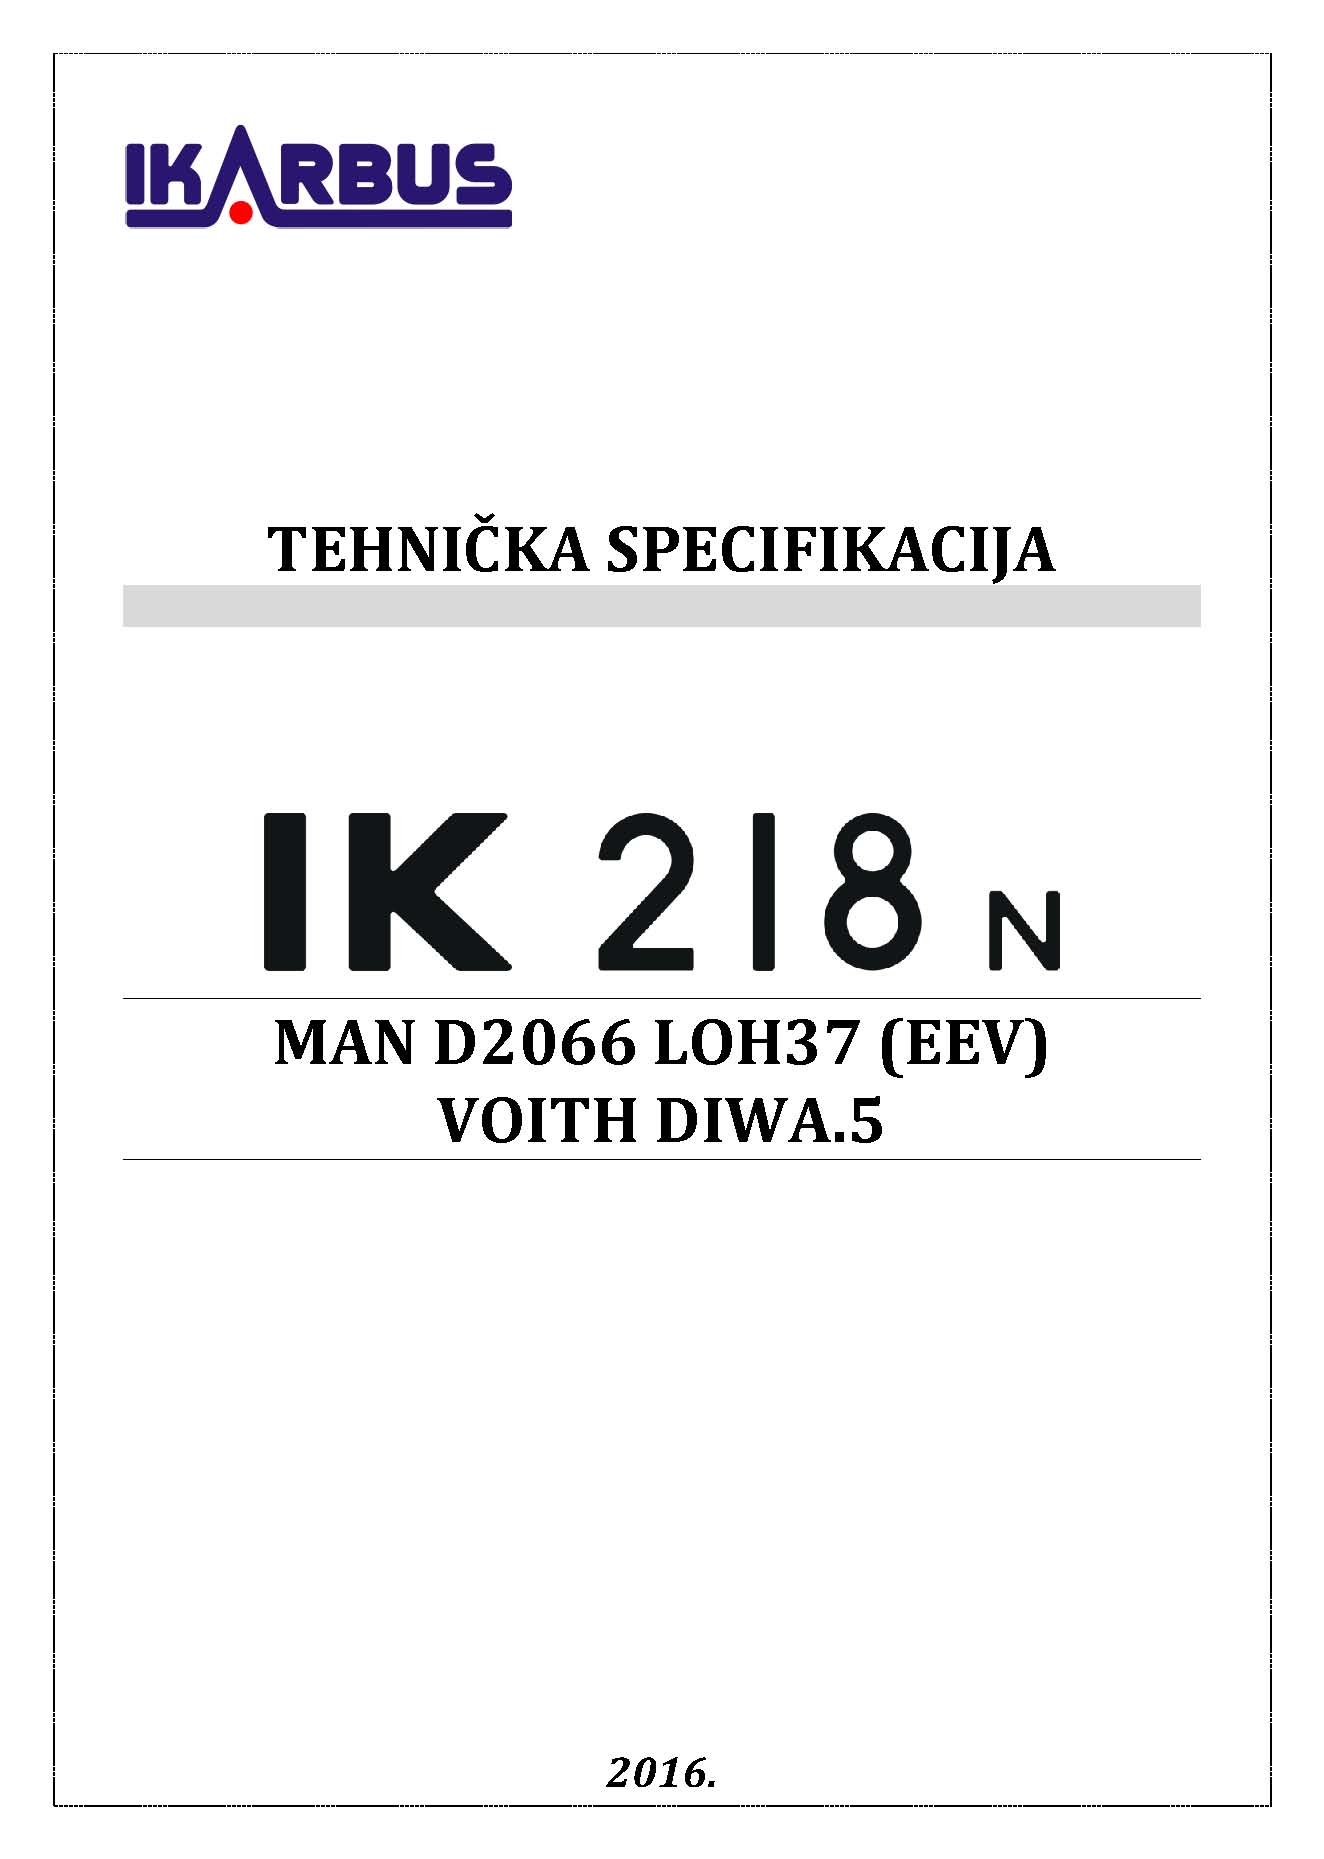 TS IK218N web1 SR